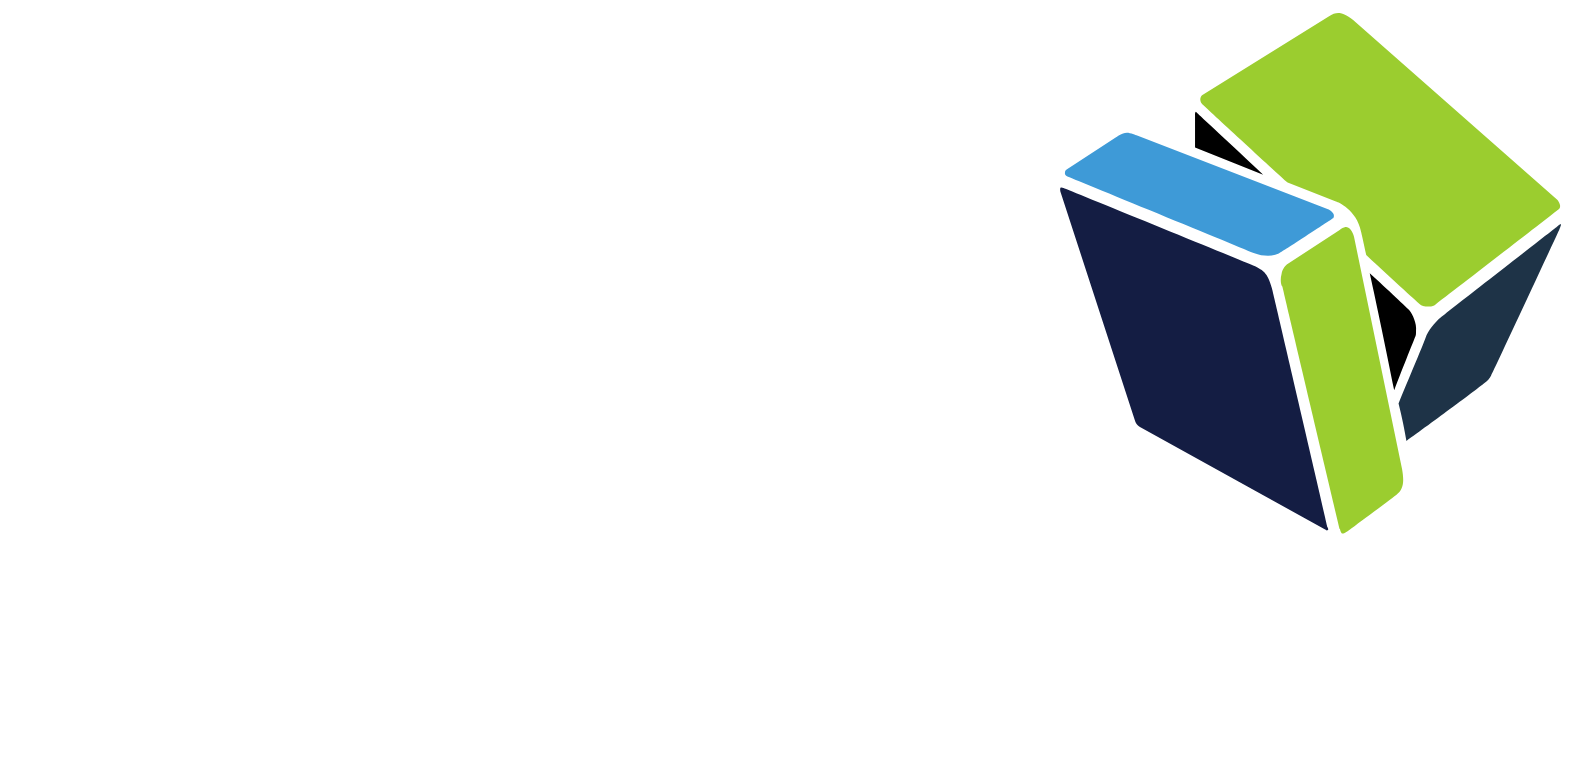 NTG Nordic Transport Group A/S logo grand pour les fonds sombres (PNG transparent)